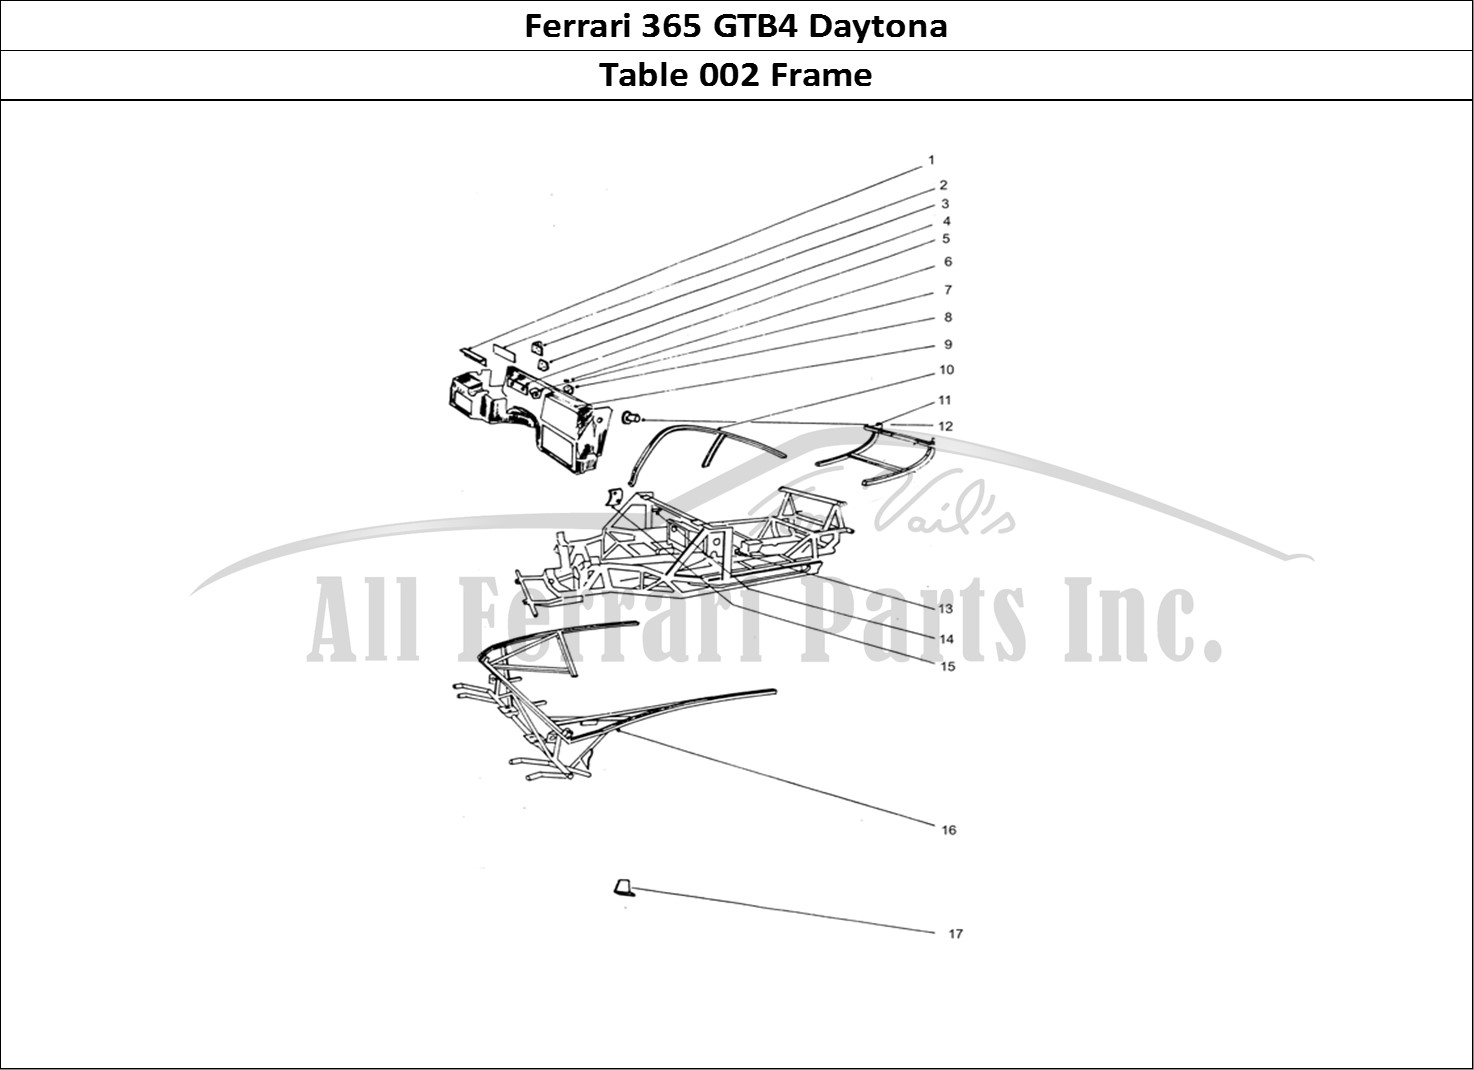 Ferrari Parts Ferrari 365 GTB4 Daytona (Coachwork) Page 002 Frame work